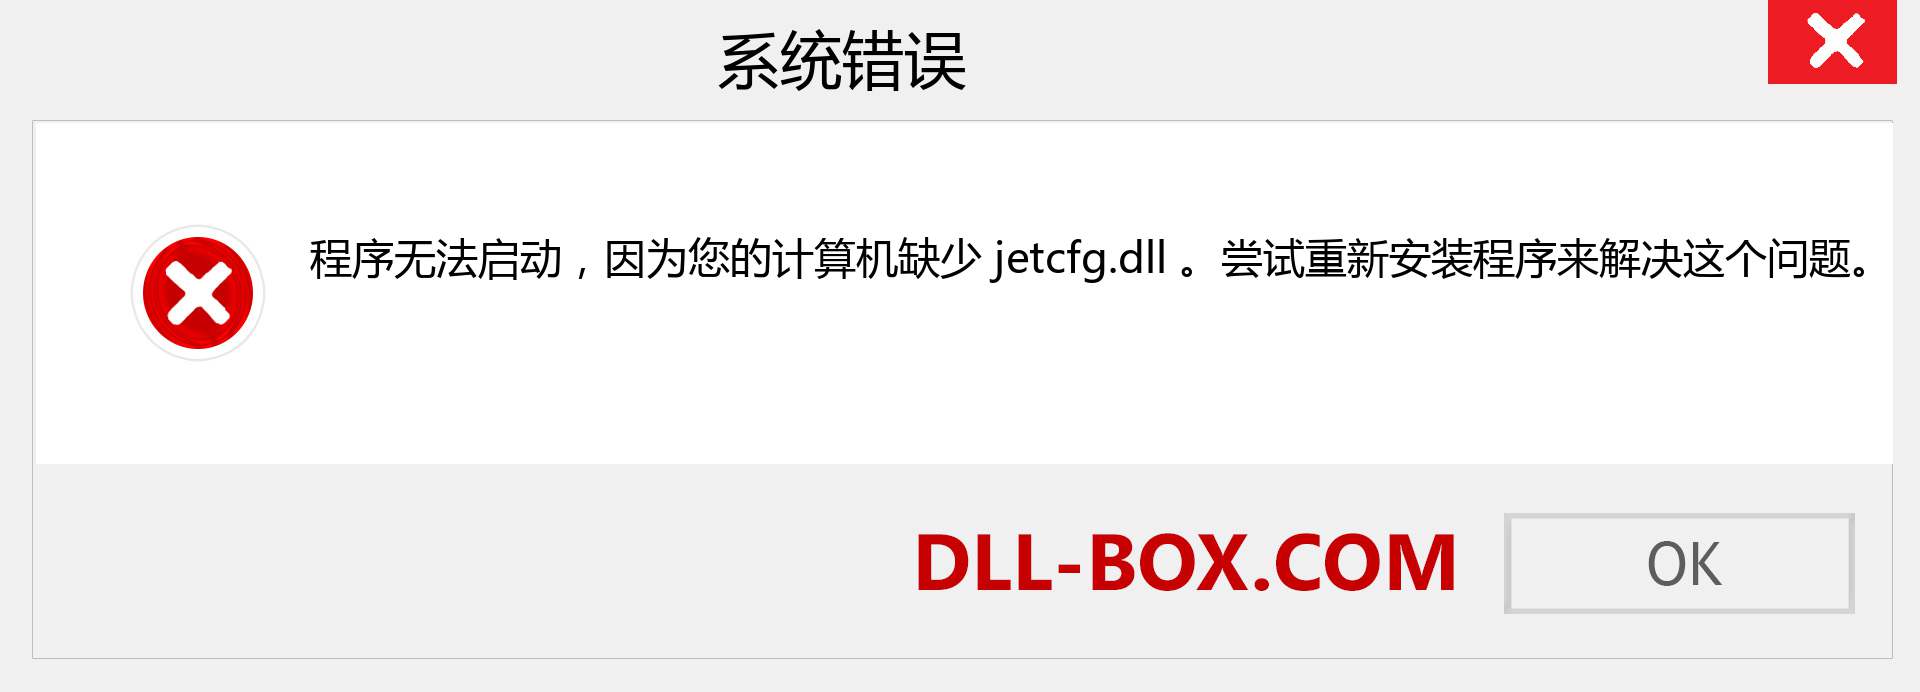 jetcfg.dll 文件丢失？。 适用于 Windows 7、8、10 的下载 - 修复 Windows、照片、图像上的 jetcfg dll 丢失错误